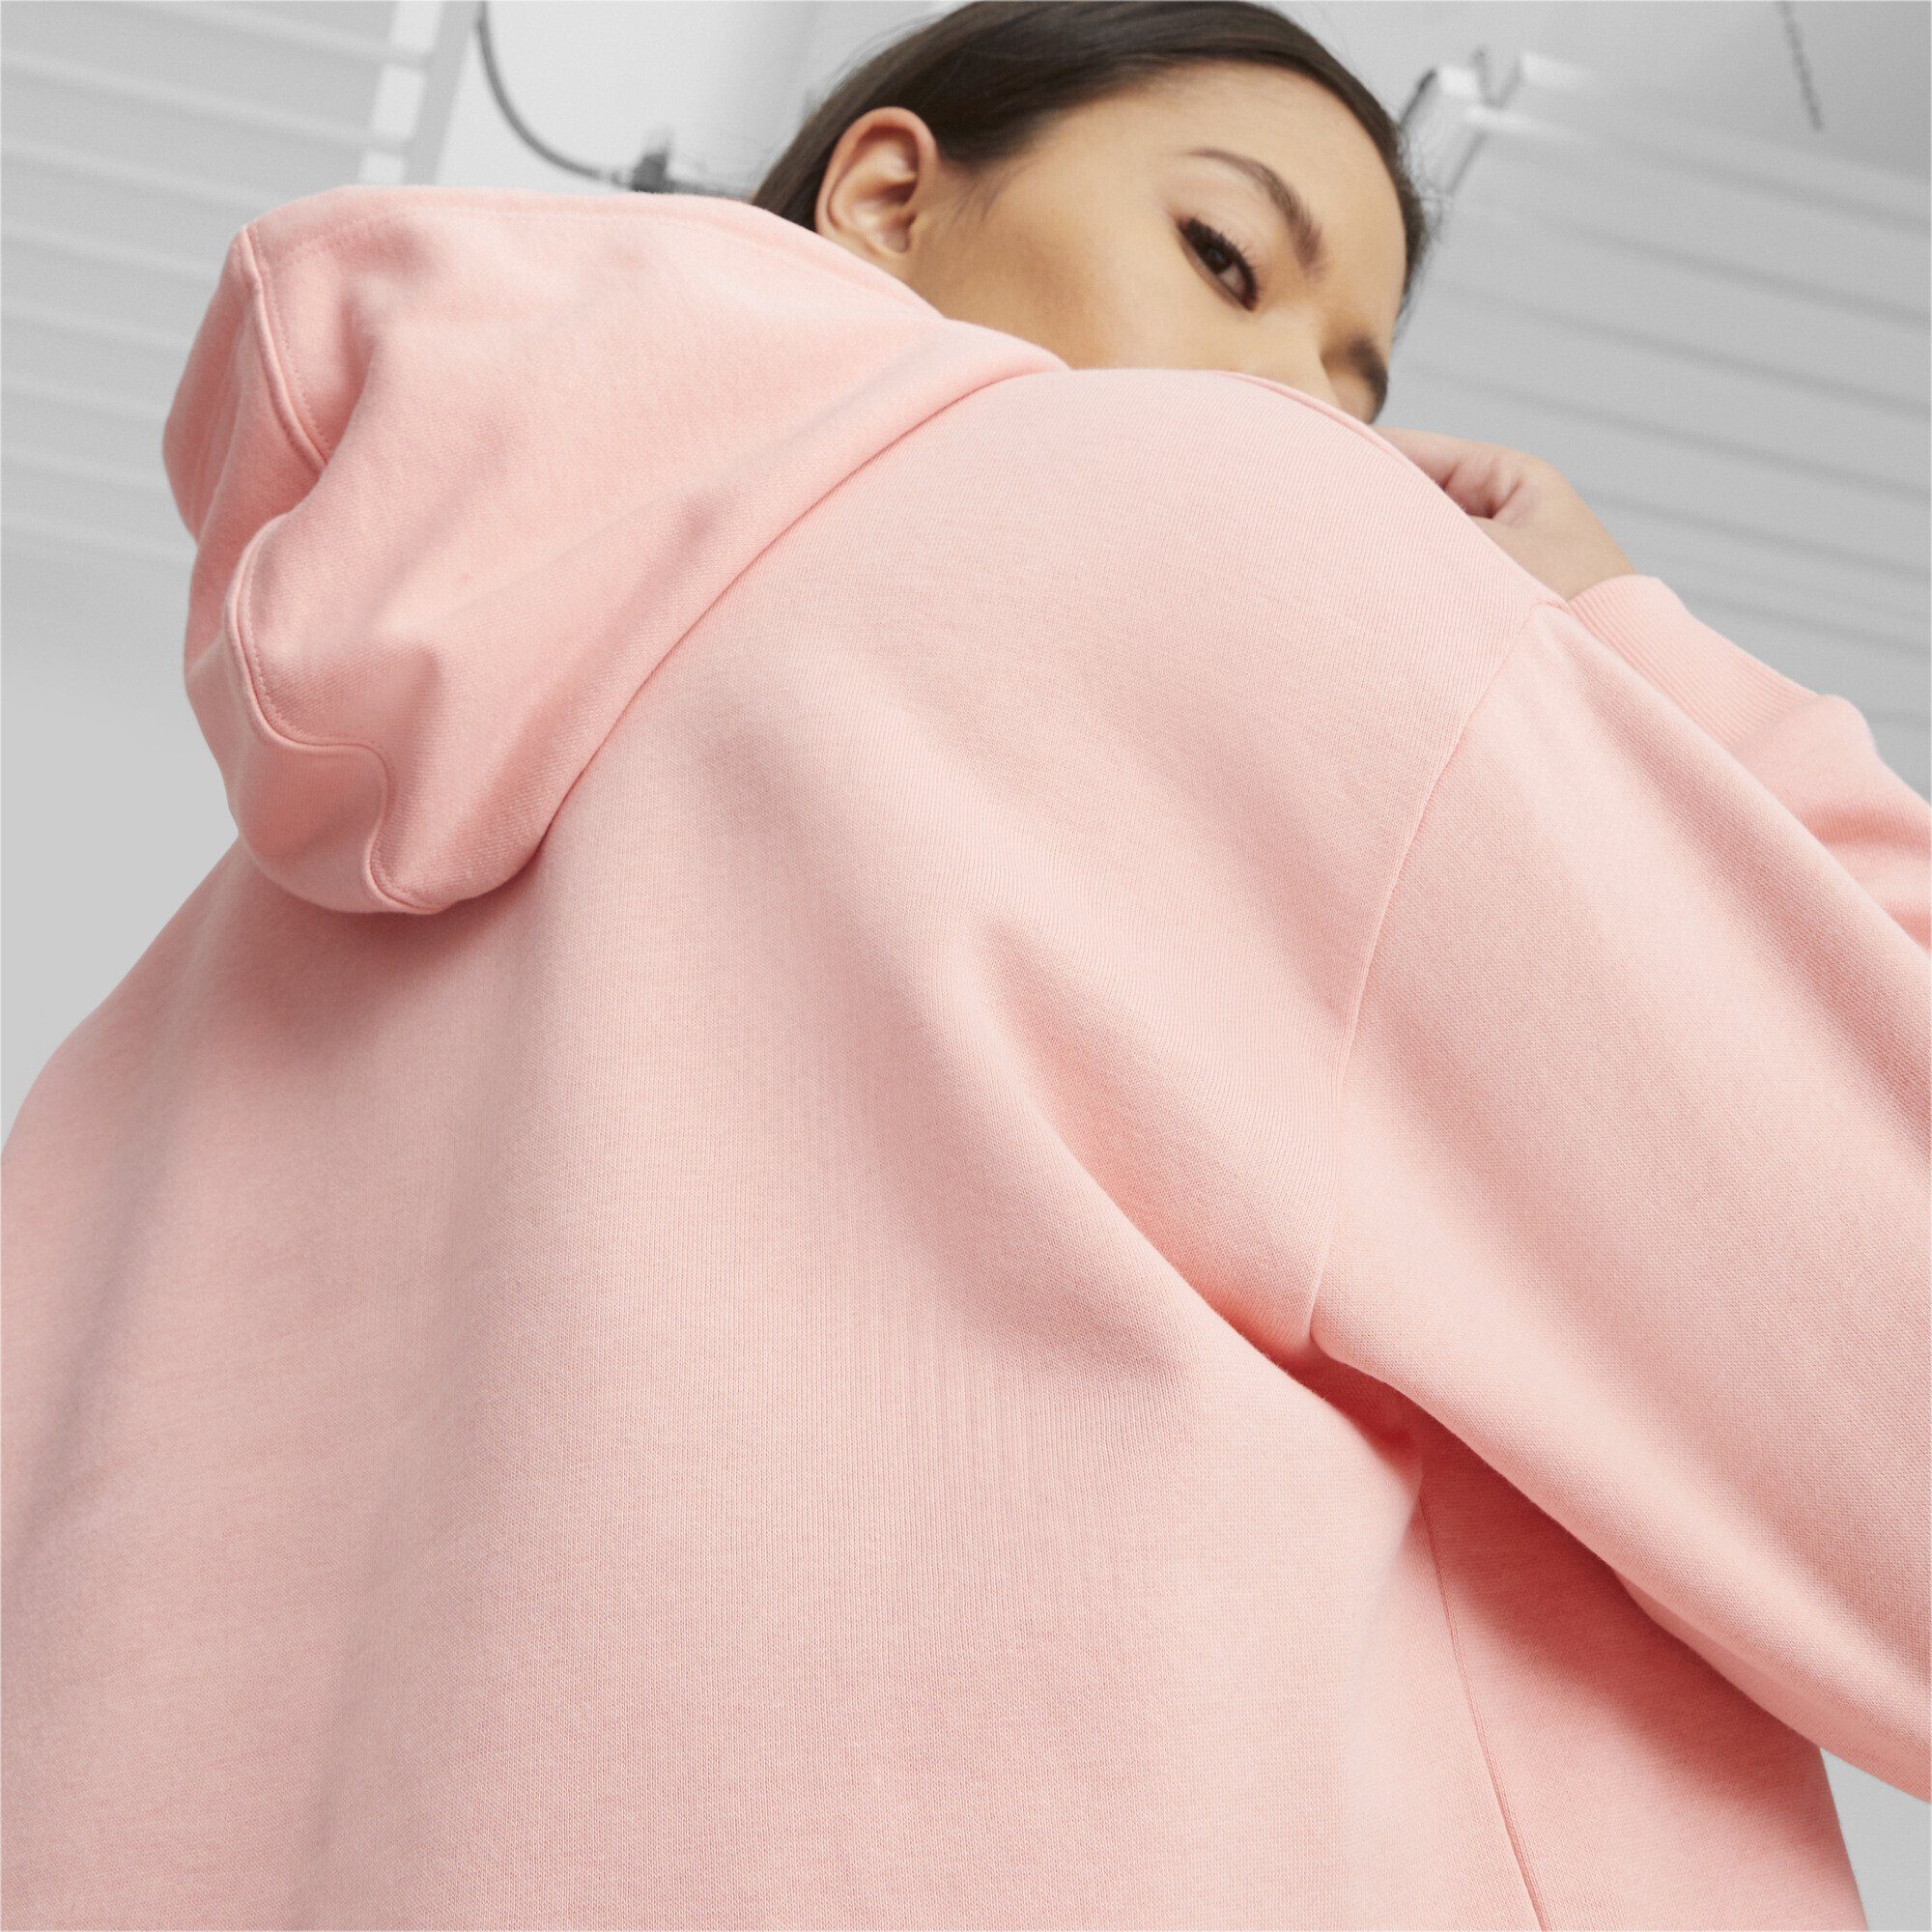 Sweatshirt Logo Peach Cropped Pink Essentials+ PUMA Damen Hoodie Smoothie